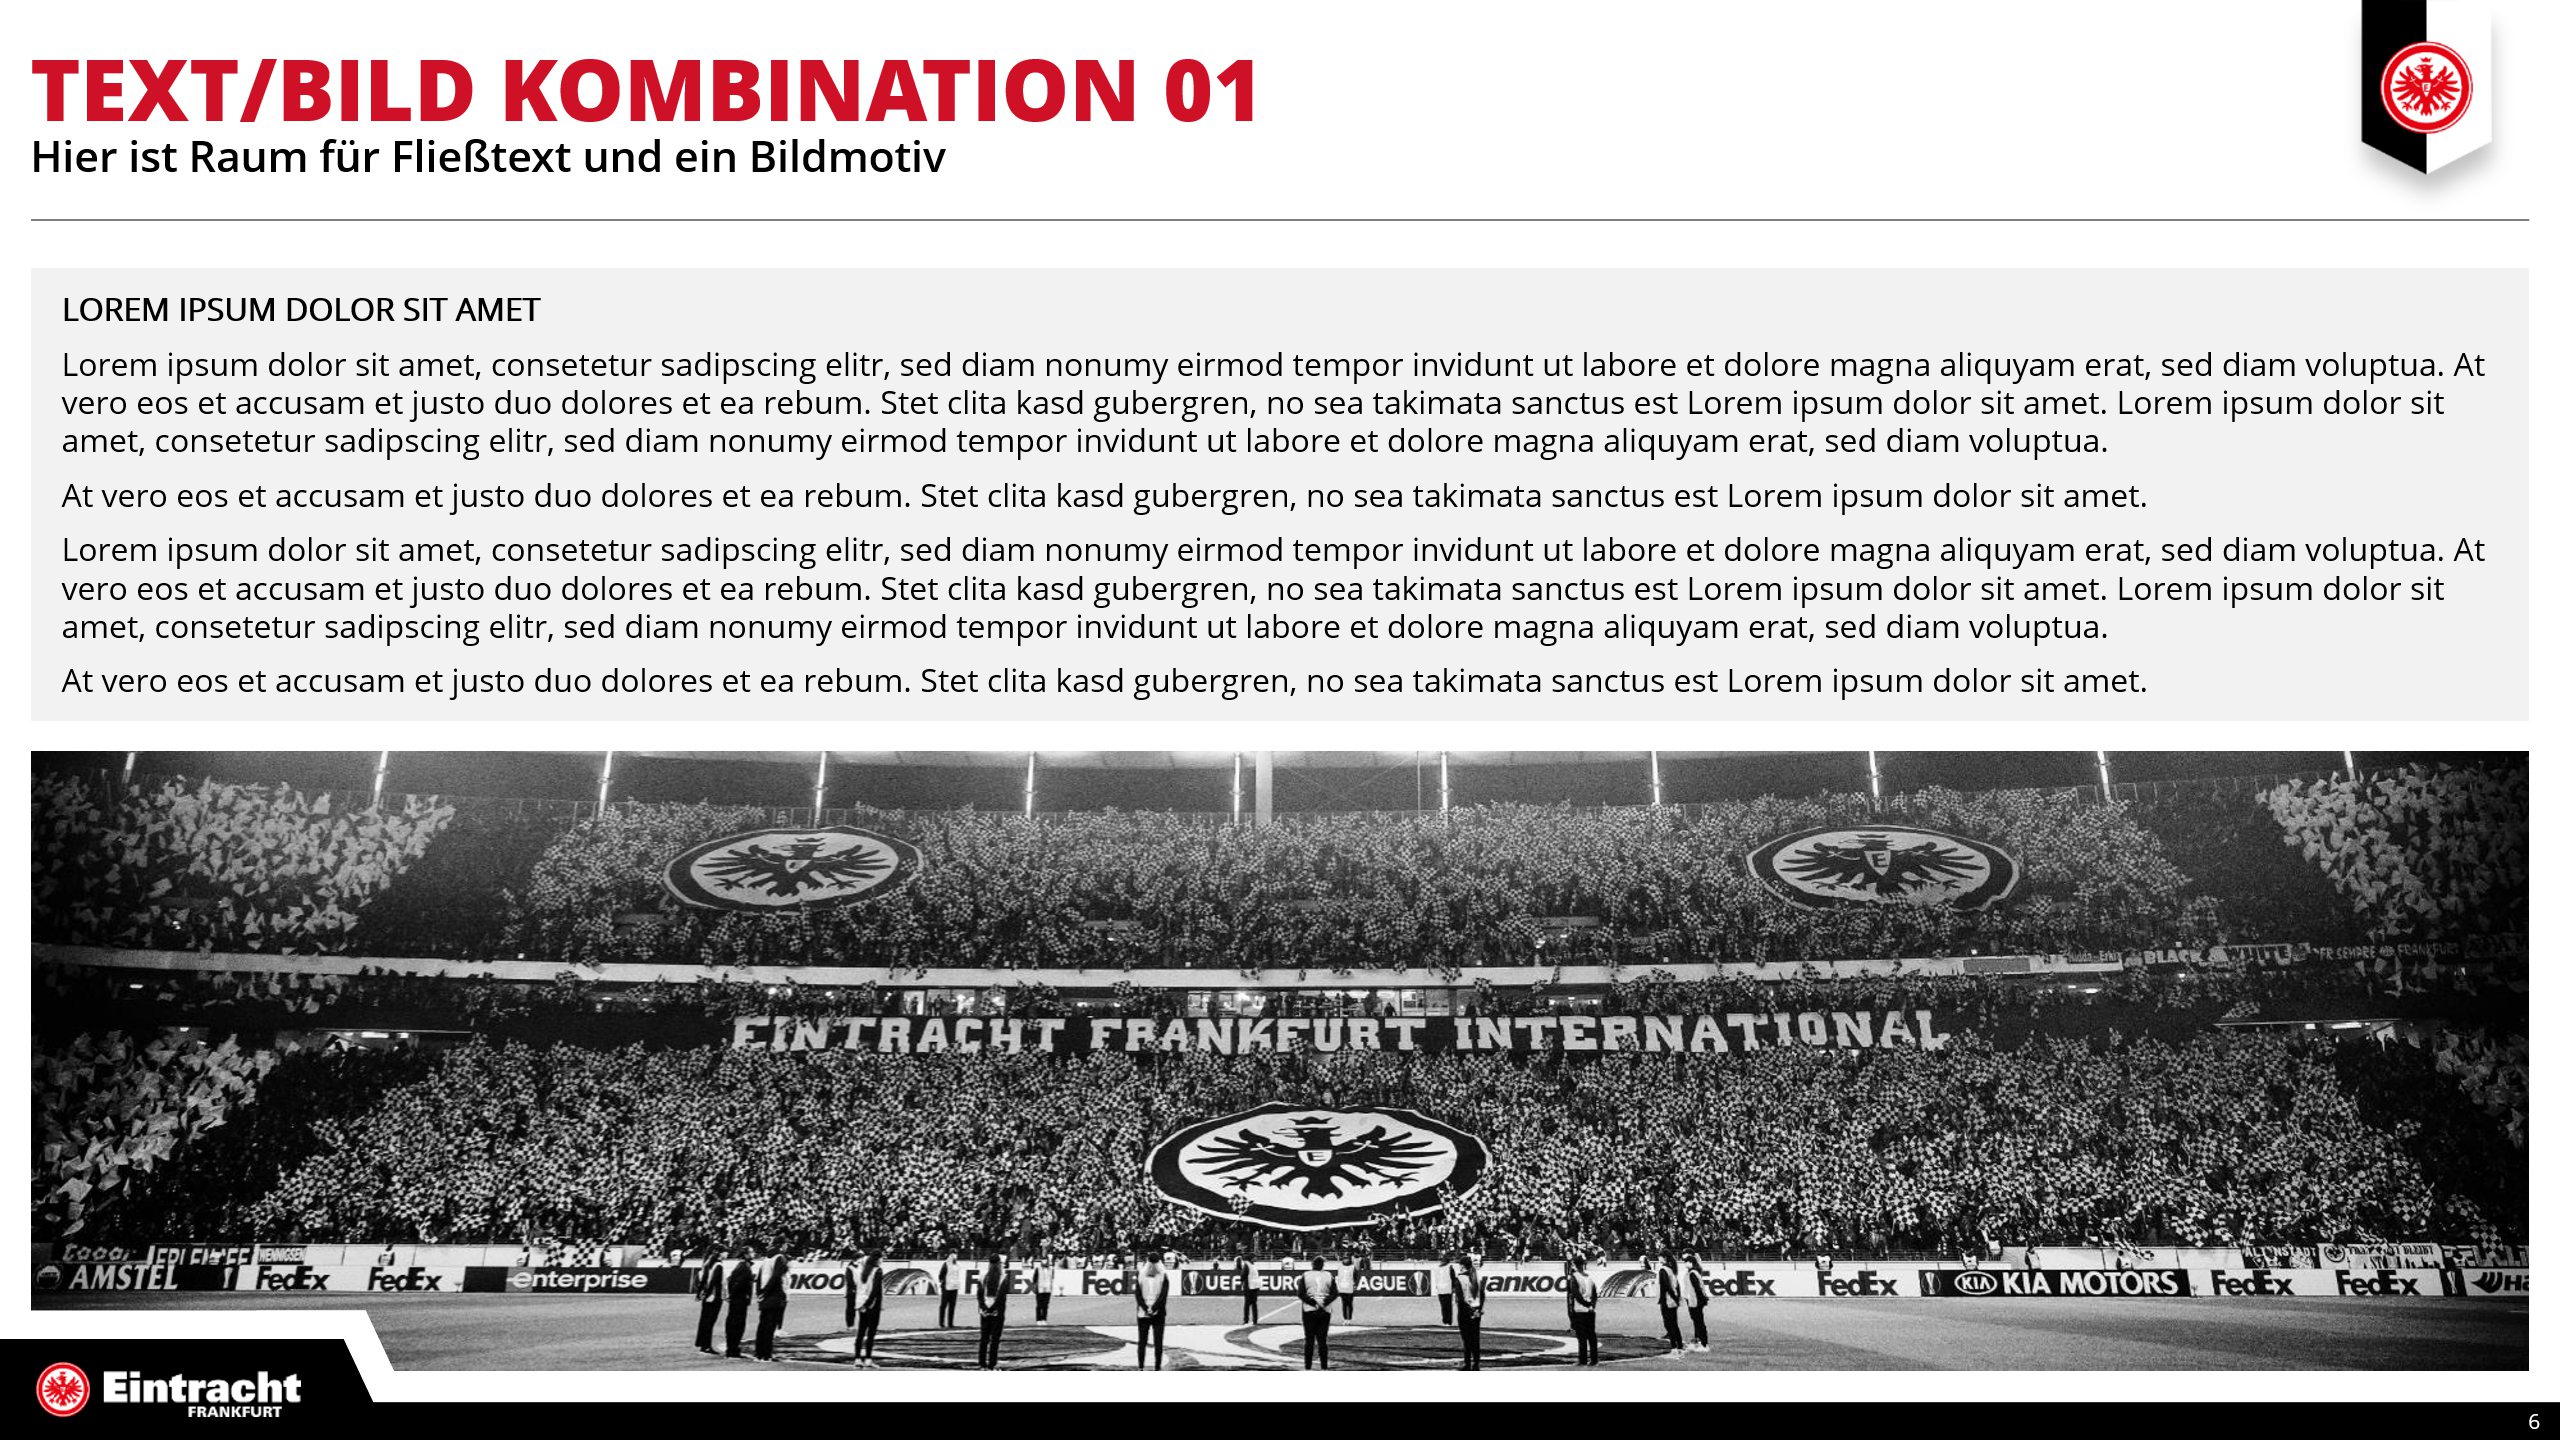 Eintracht Frankfurt PowerPoint Präsentation Text/Bild Kombination01